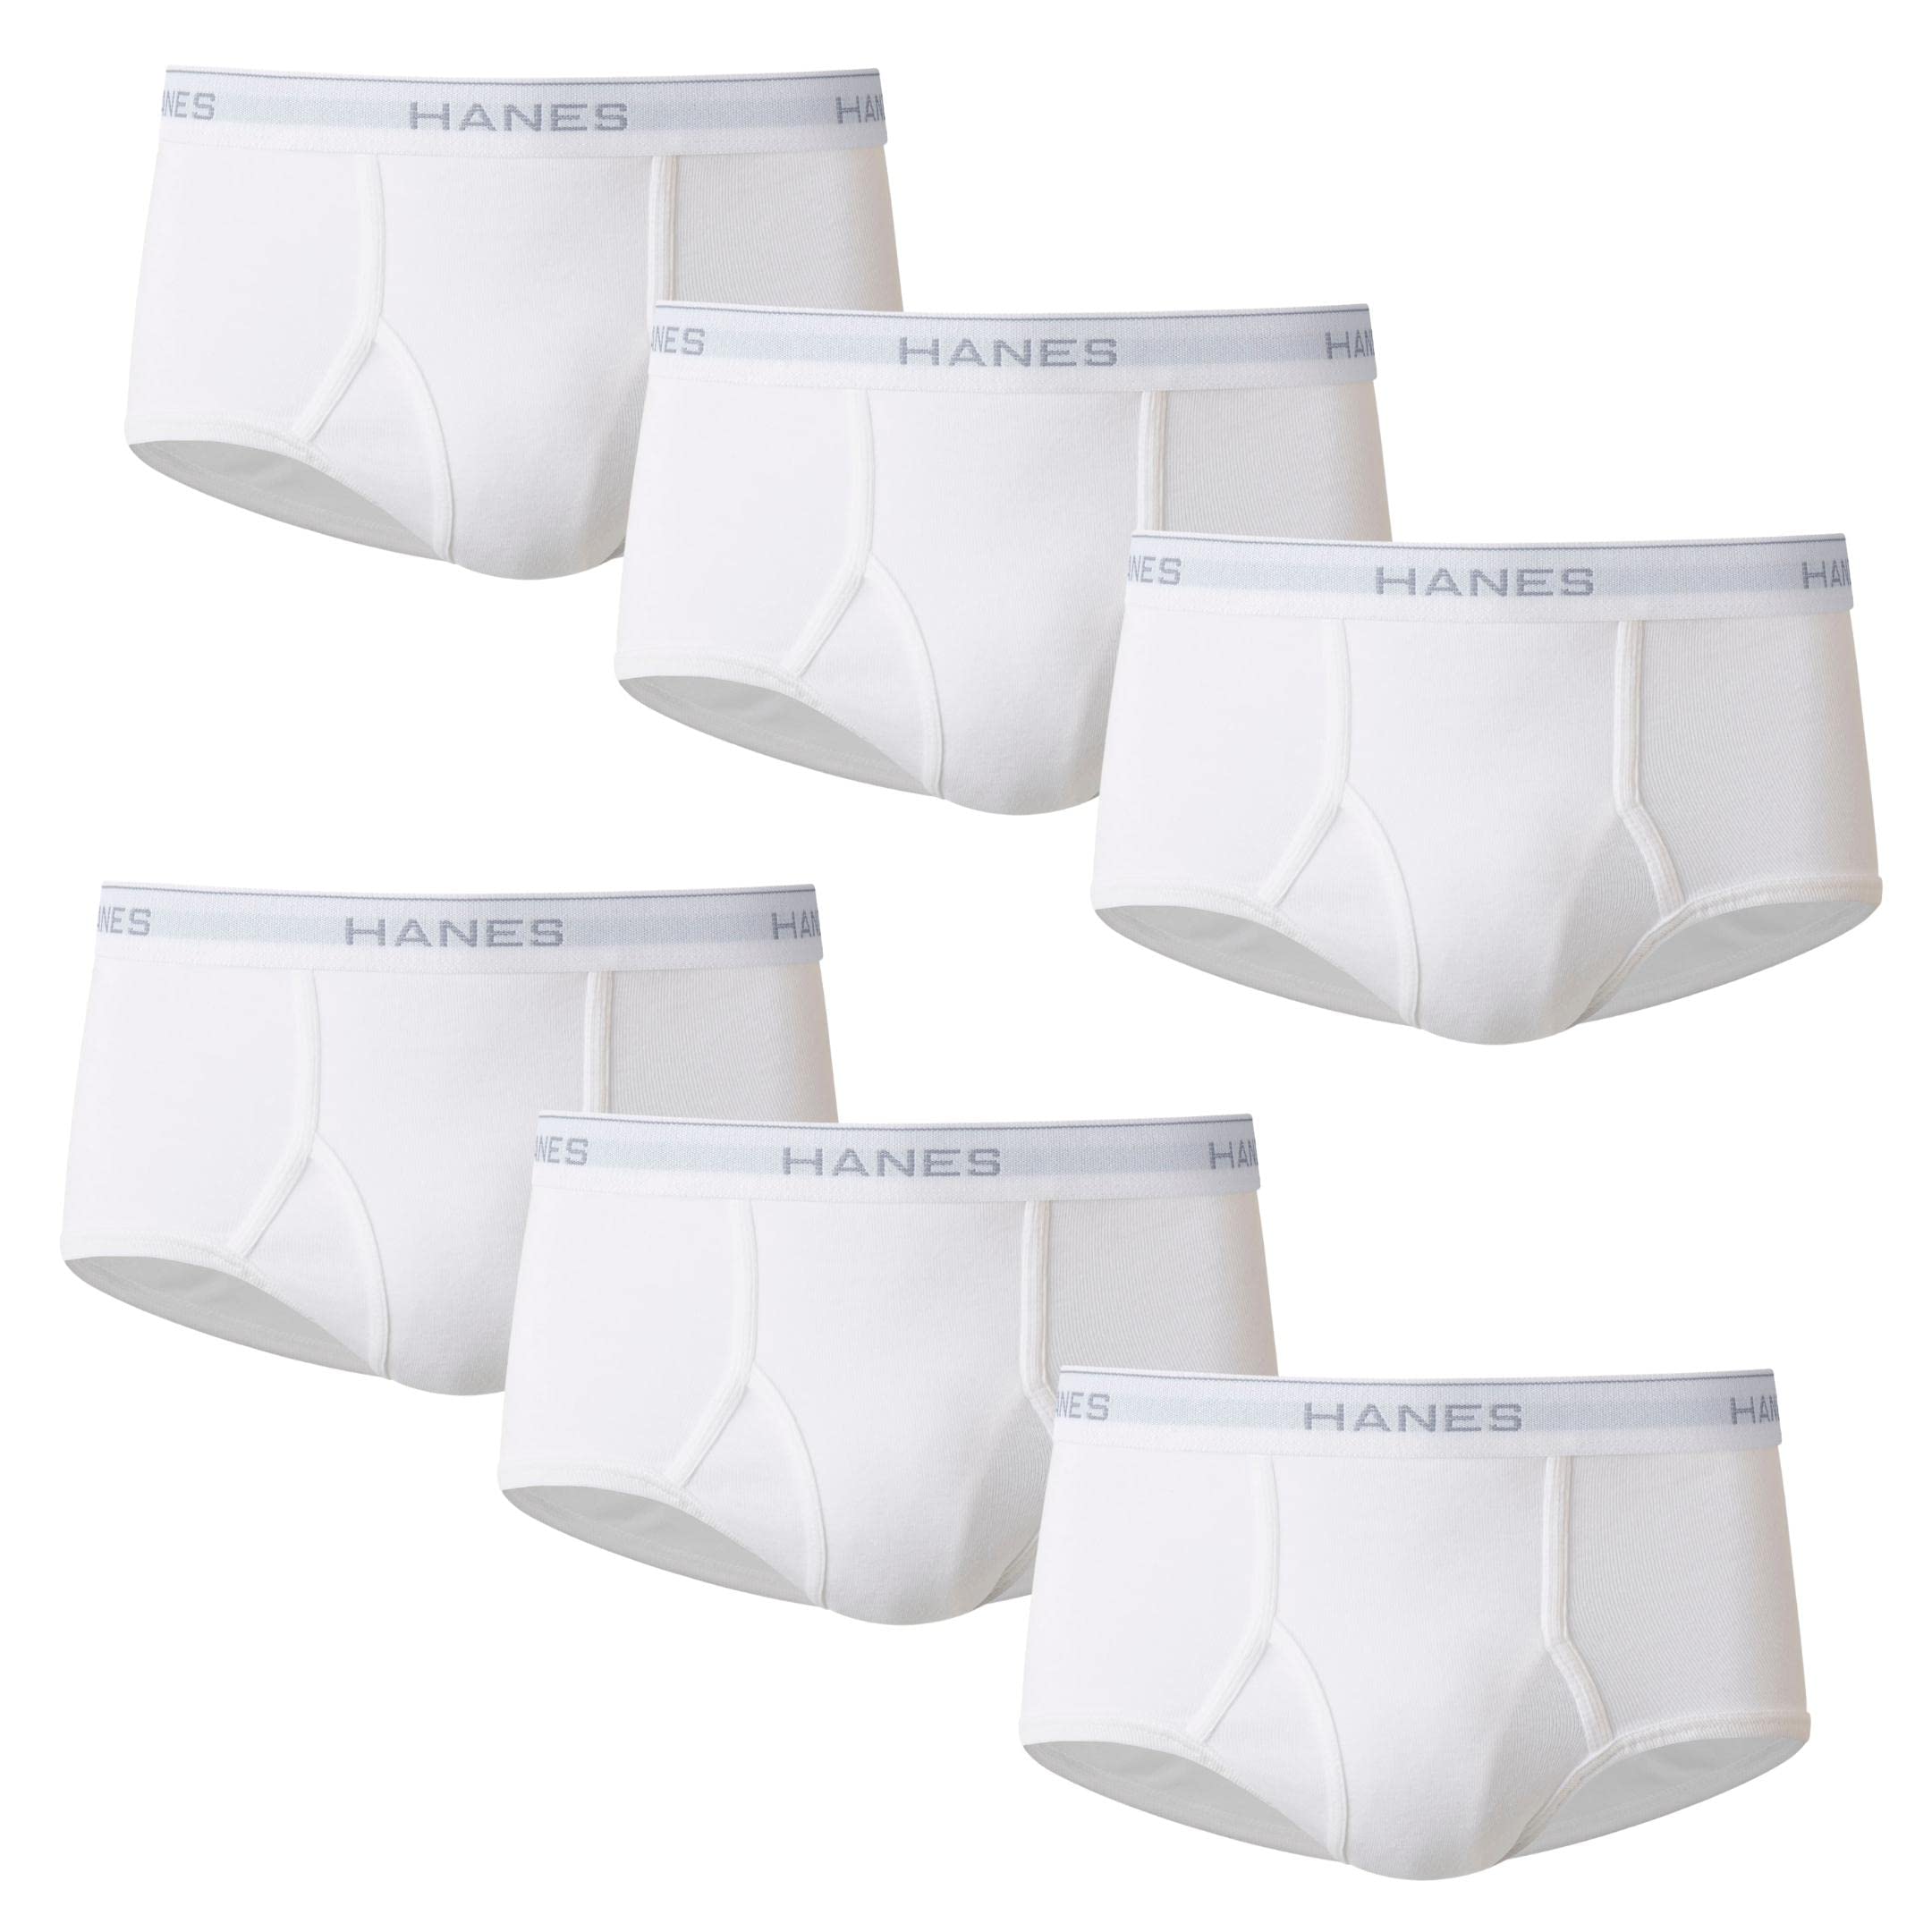 Hanes Calzoncillos blancos sin etiqueta para hombre con cintura ComfortFlex, varios paquetes disponibles